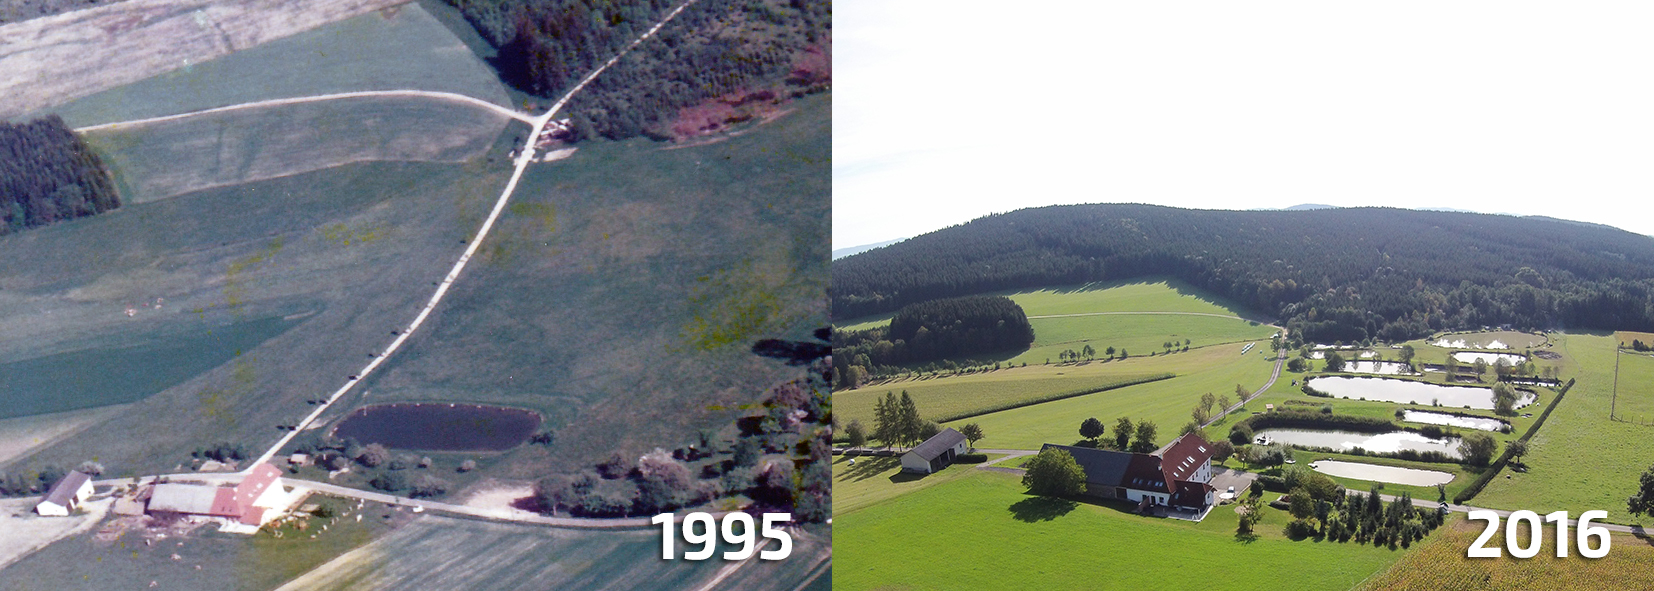 Vergleich Teichanlage 1995-2016